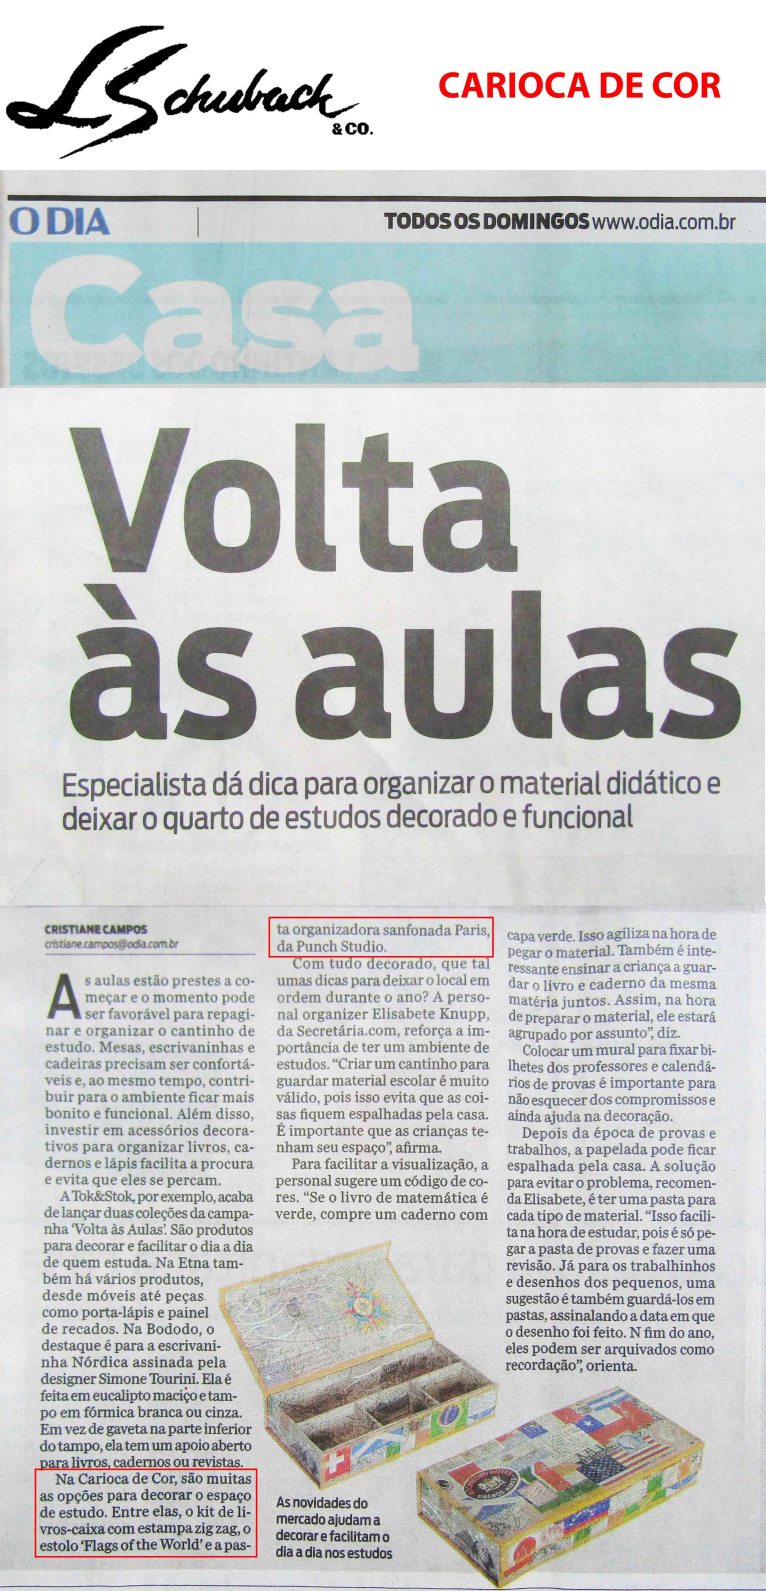 CARIOCA DE COR no caderno CASA, do jornal O DIA, em 04 de fevereiro de 2018